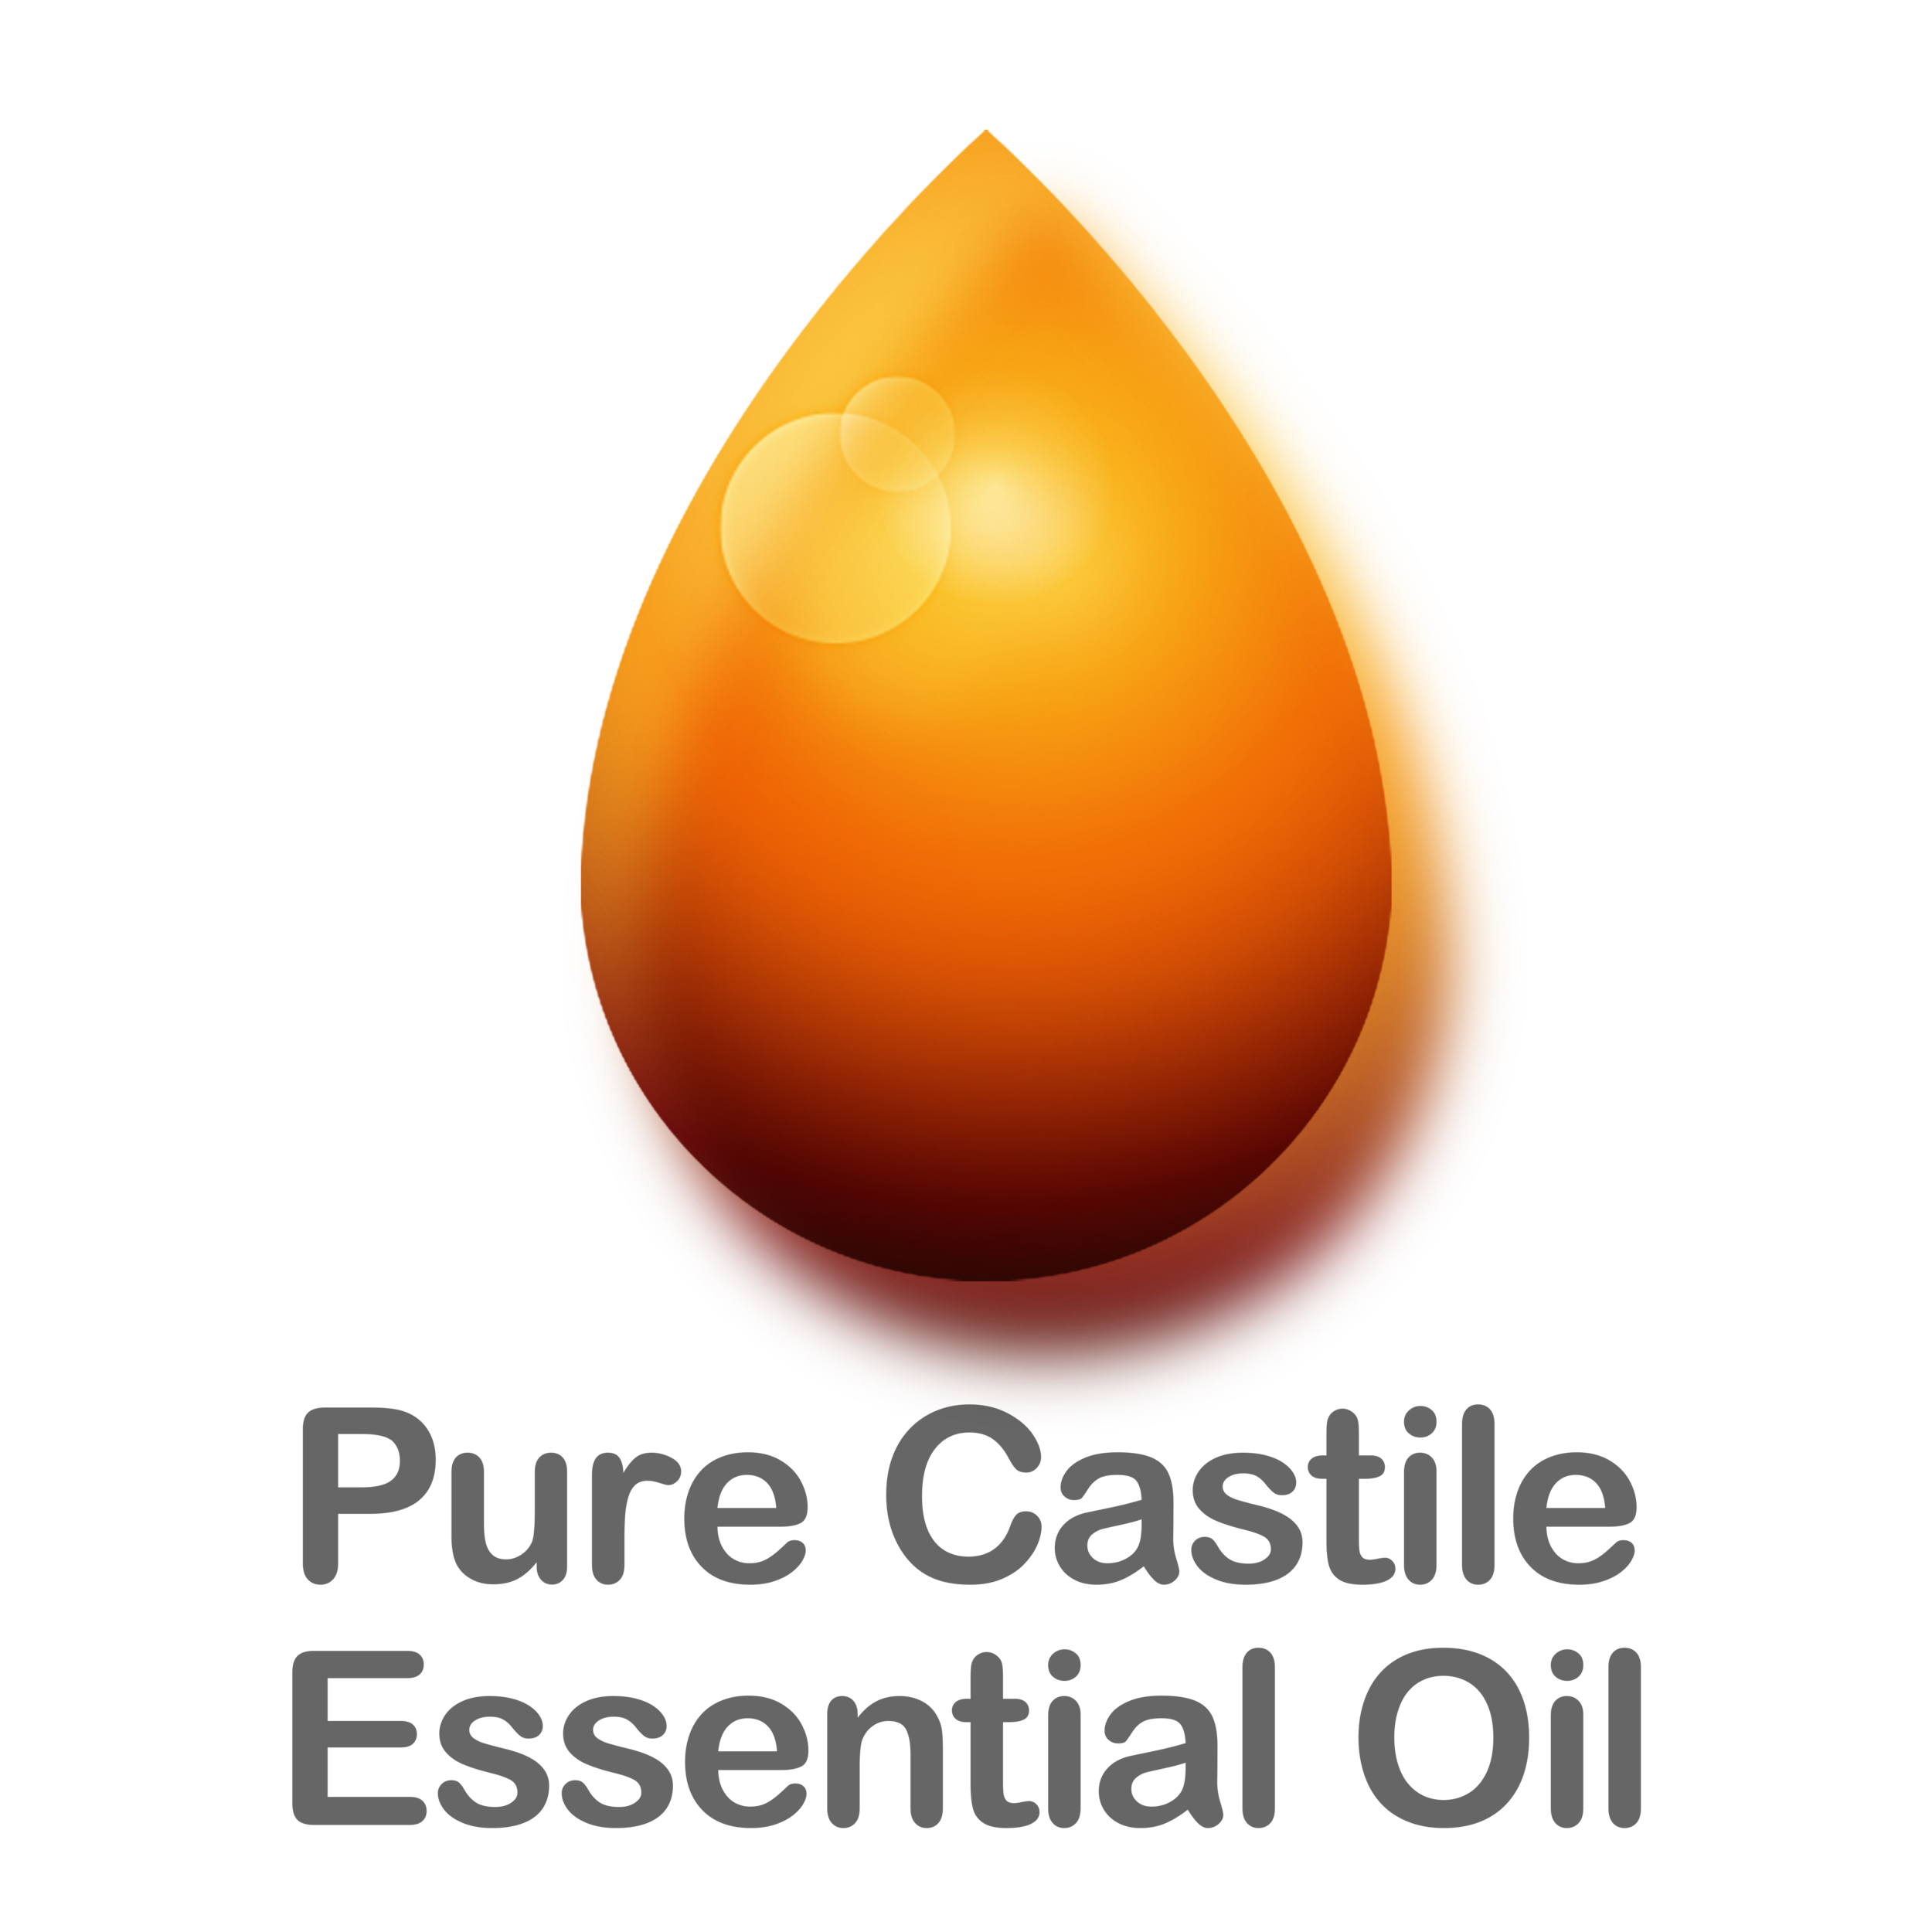 Pure Castile Essential Oil